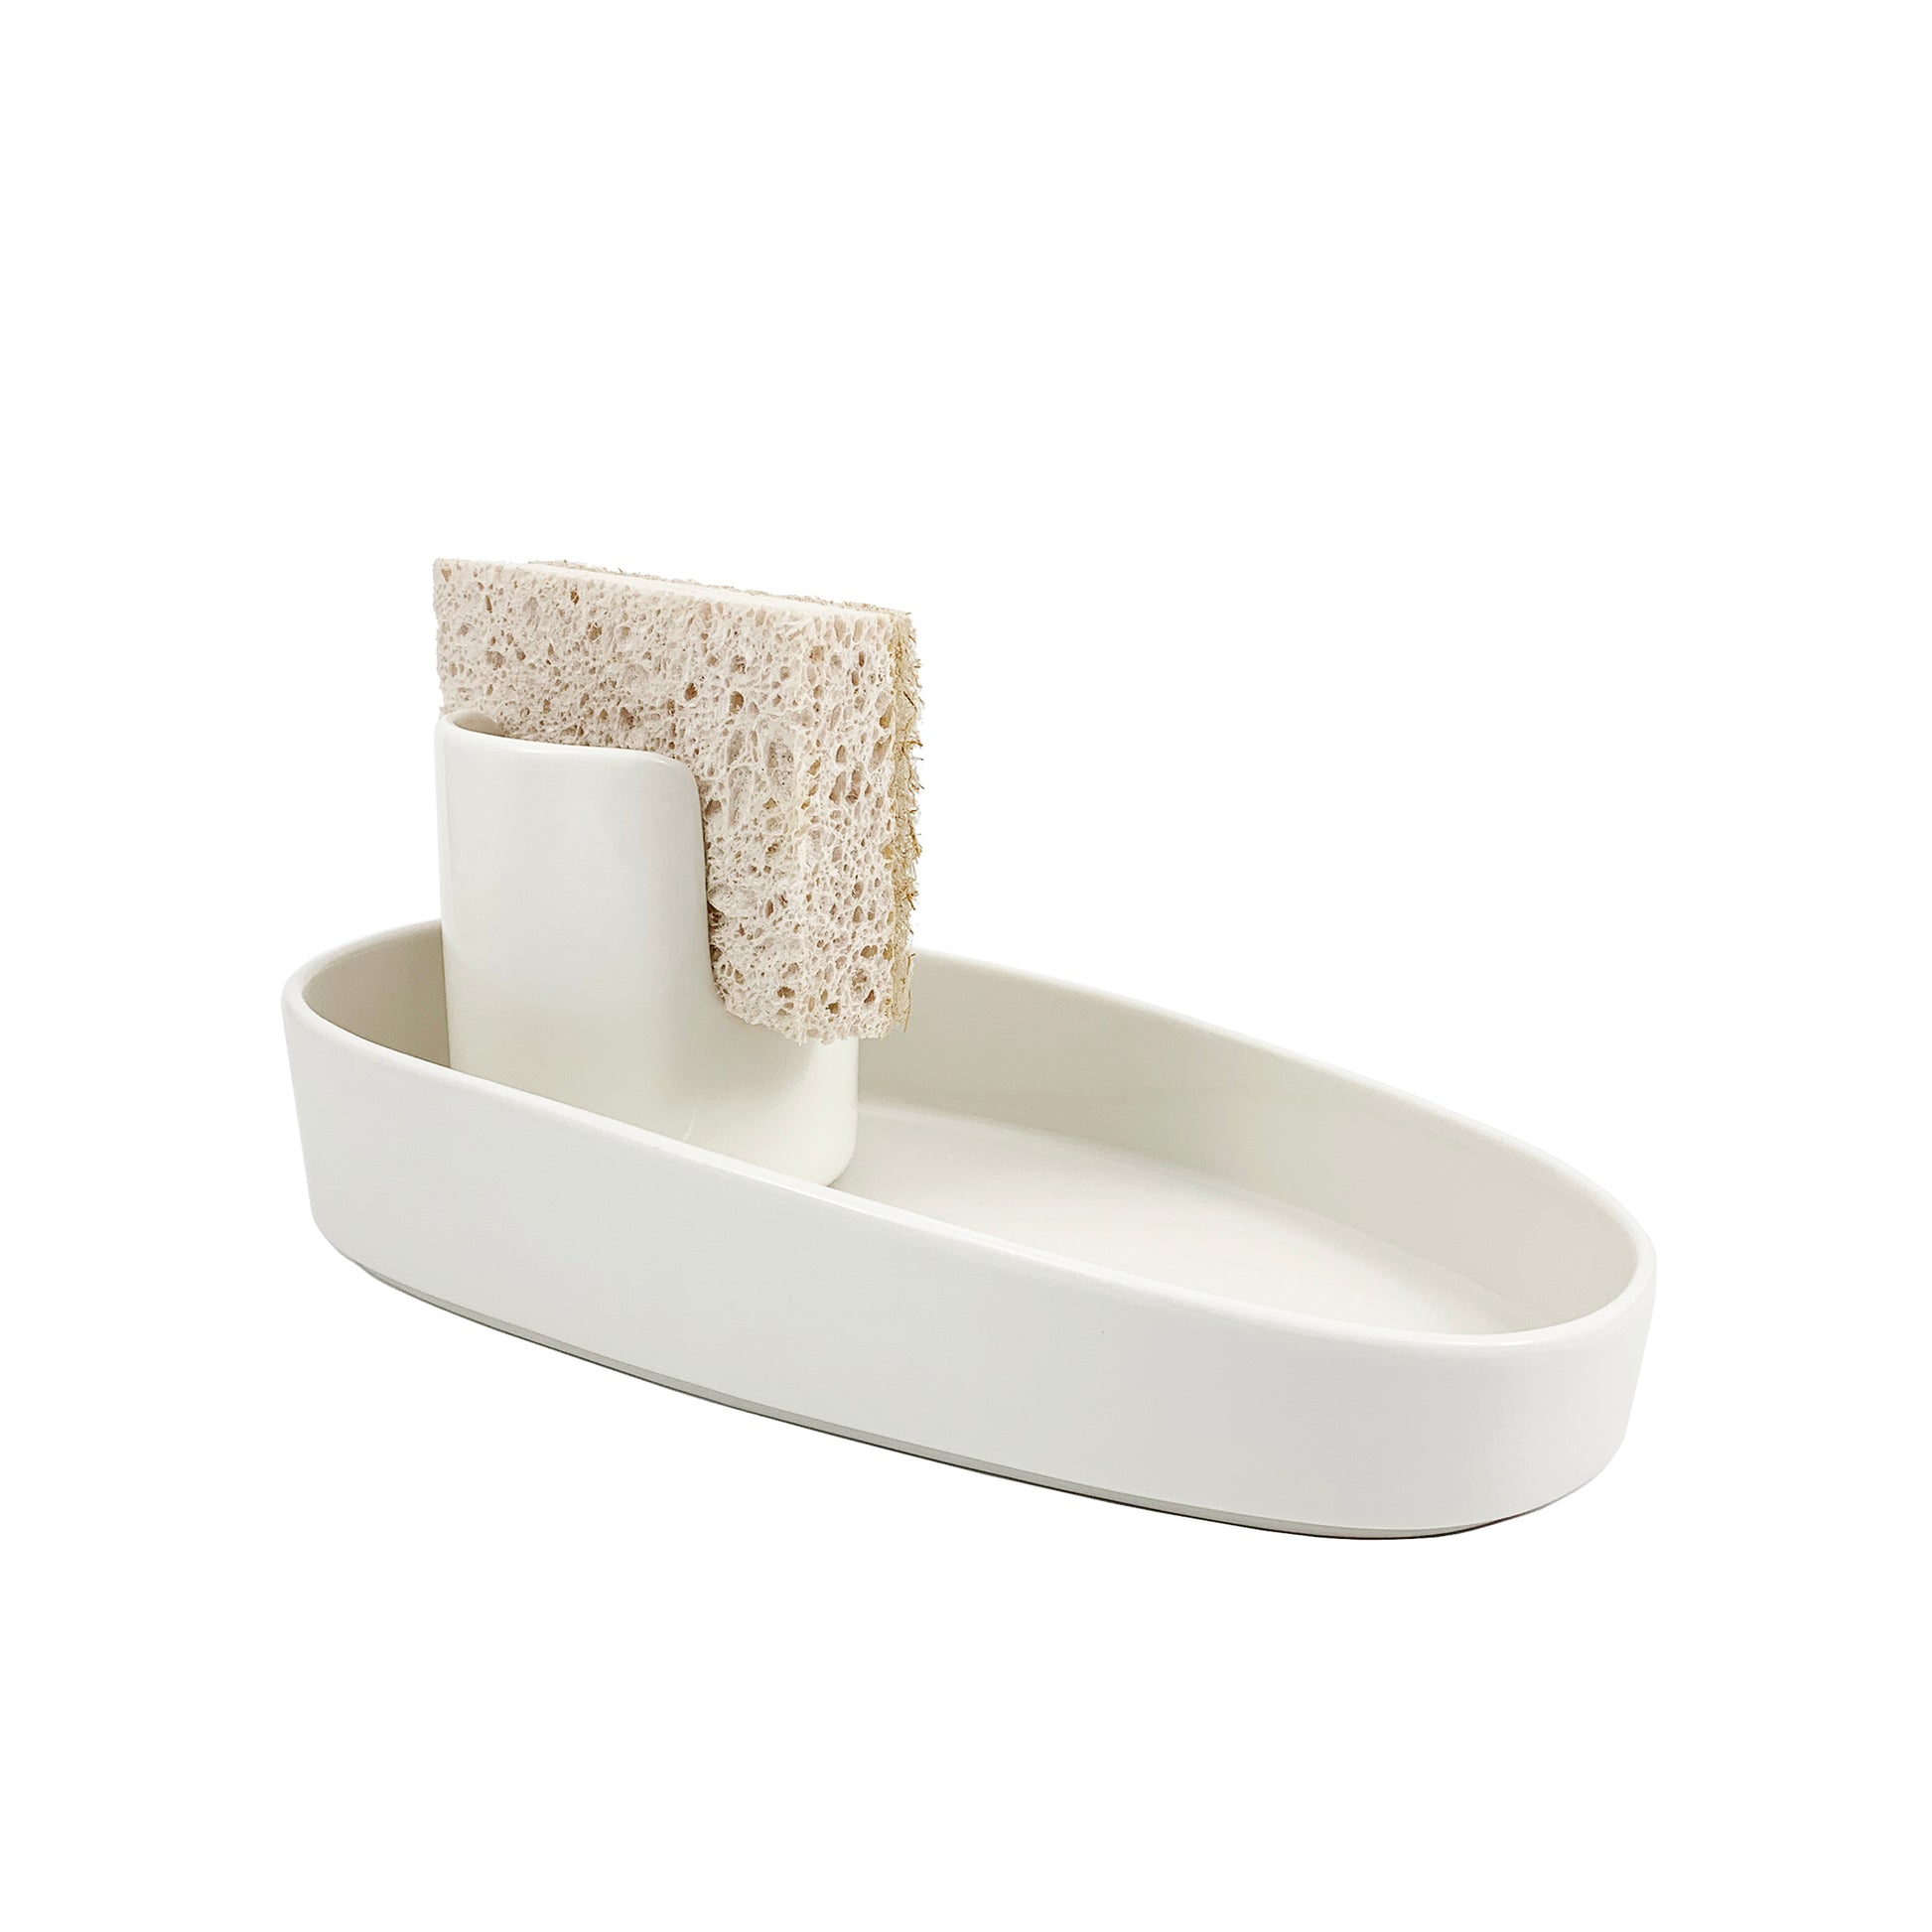 Scarlettwares Sponge Scrub Brush Holder Kitchen Caddy Ceramic White Kitchen Sink